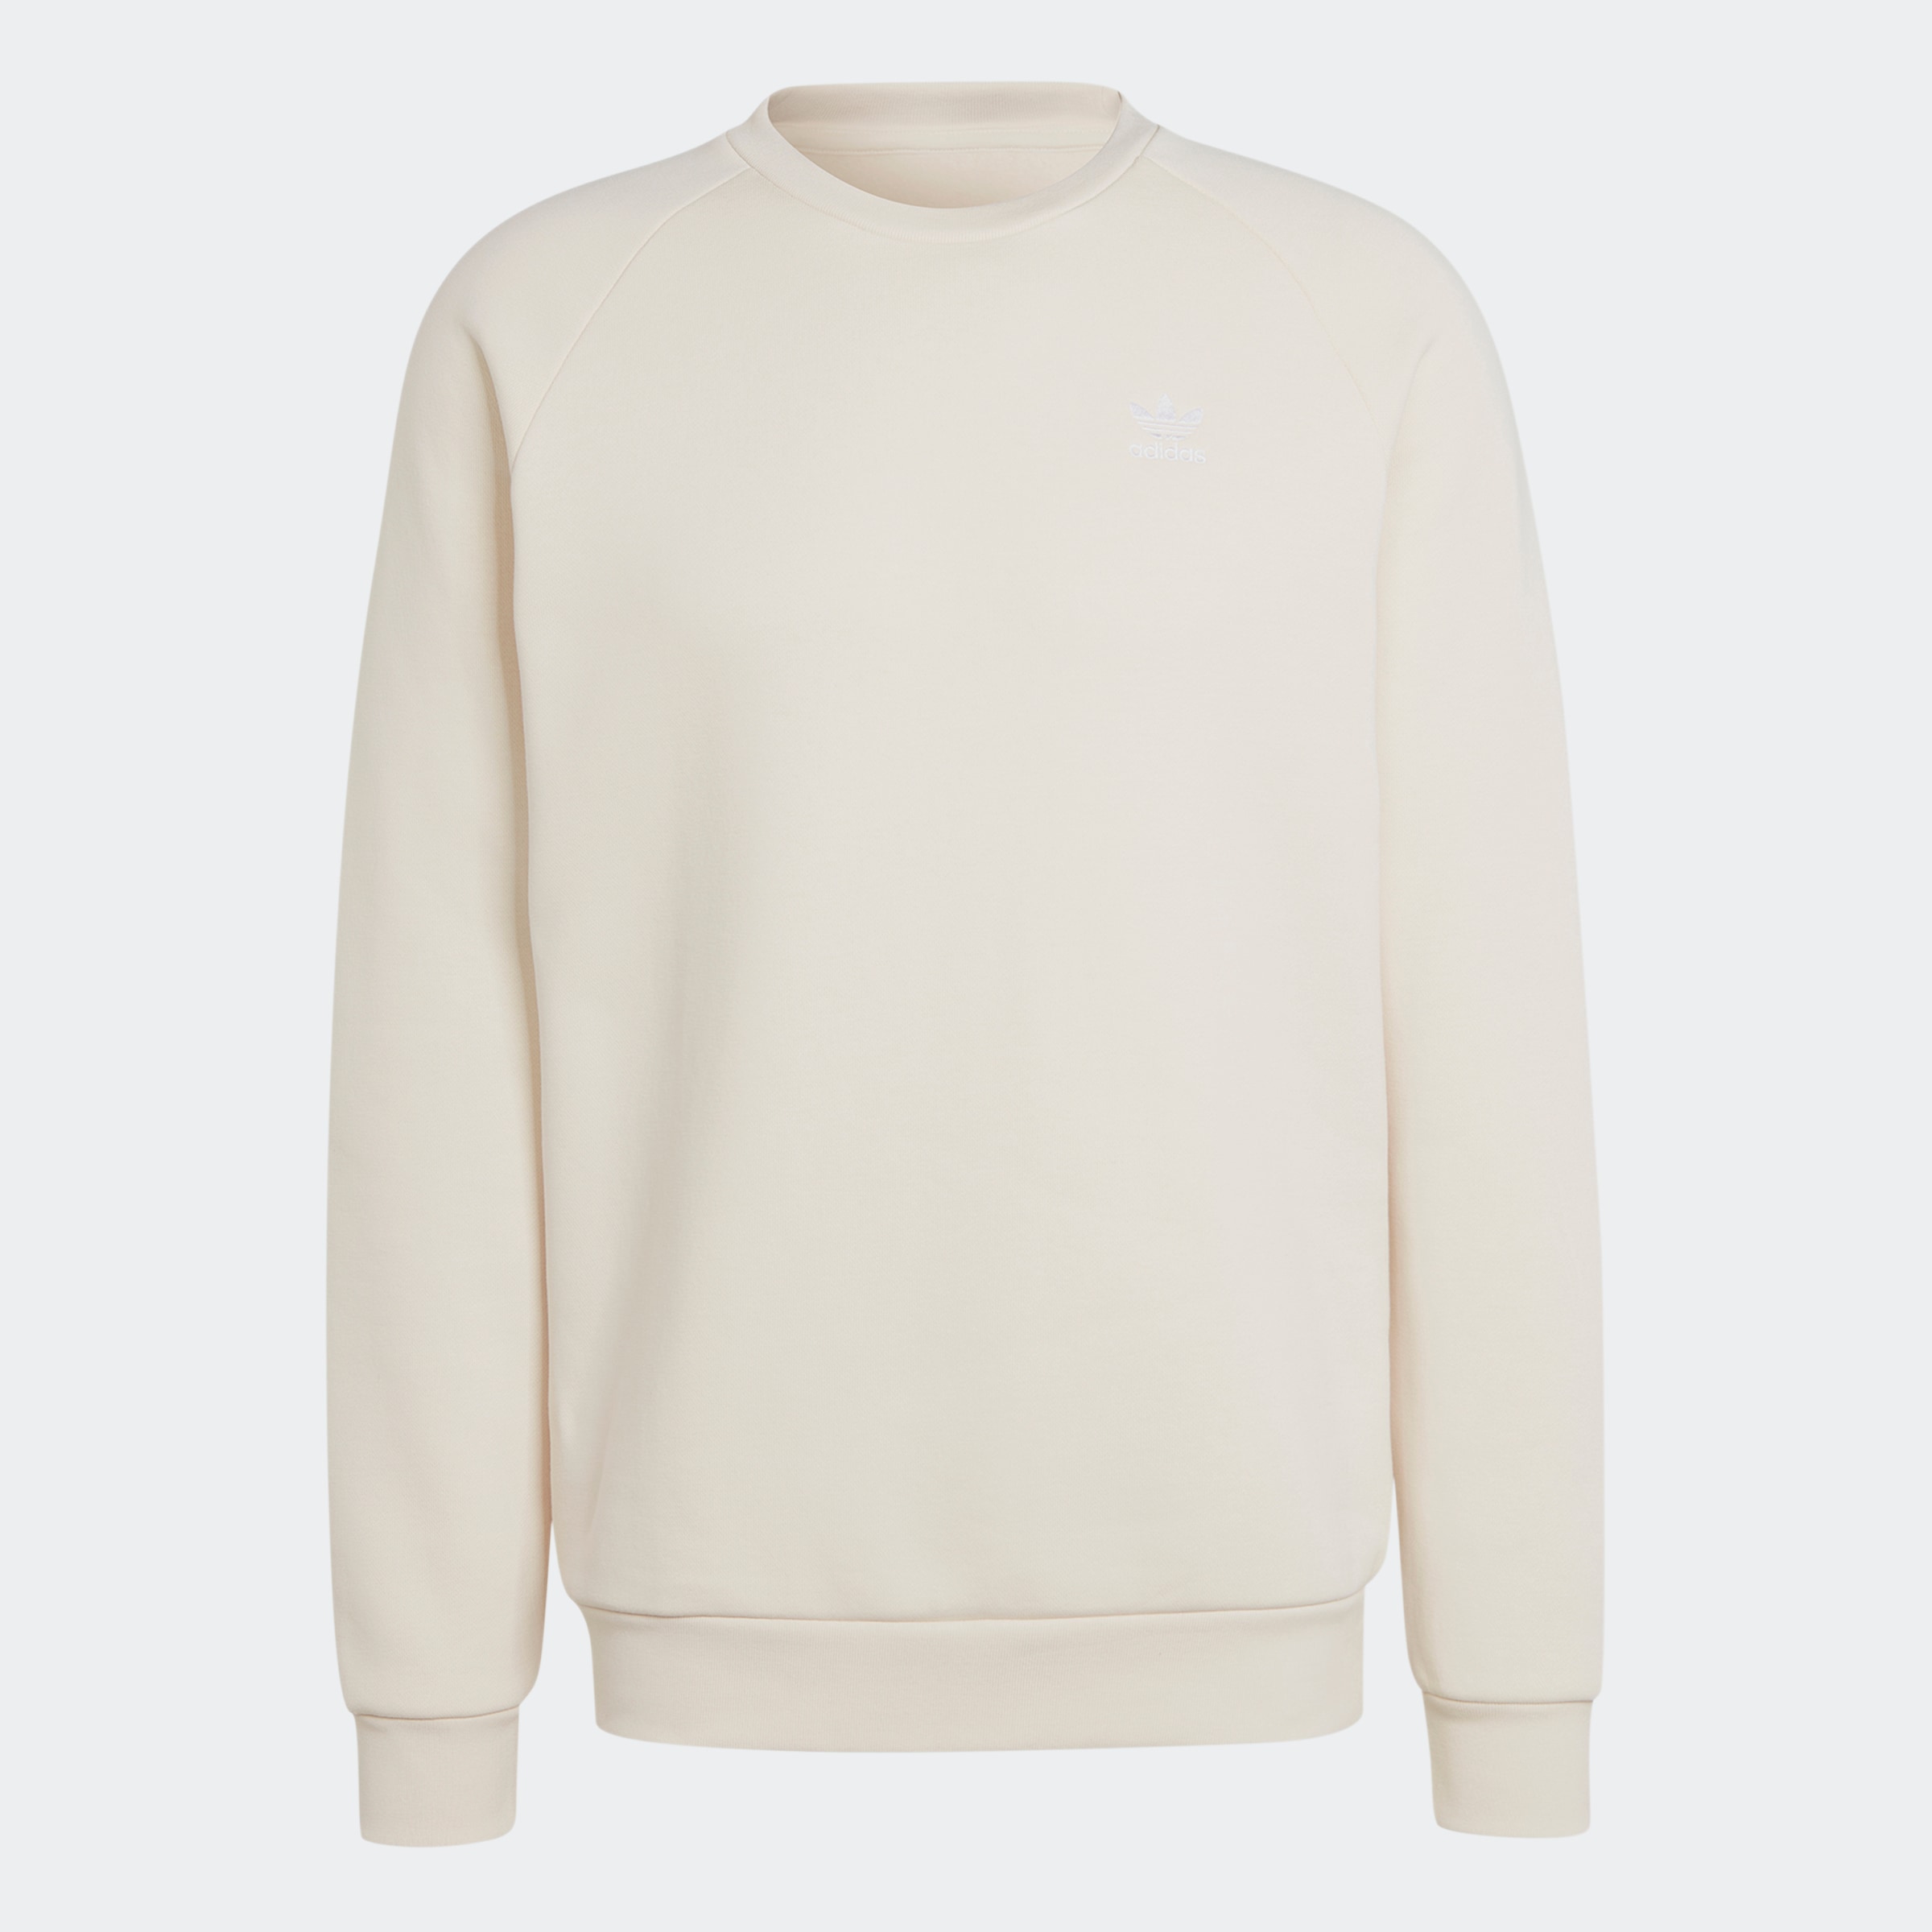 kaufen auf Rechnung ➤ Sweatshirts